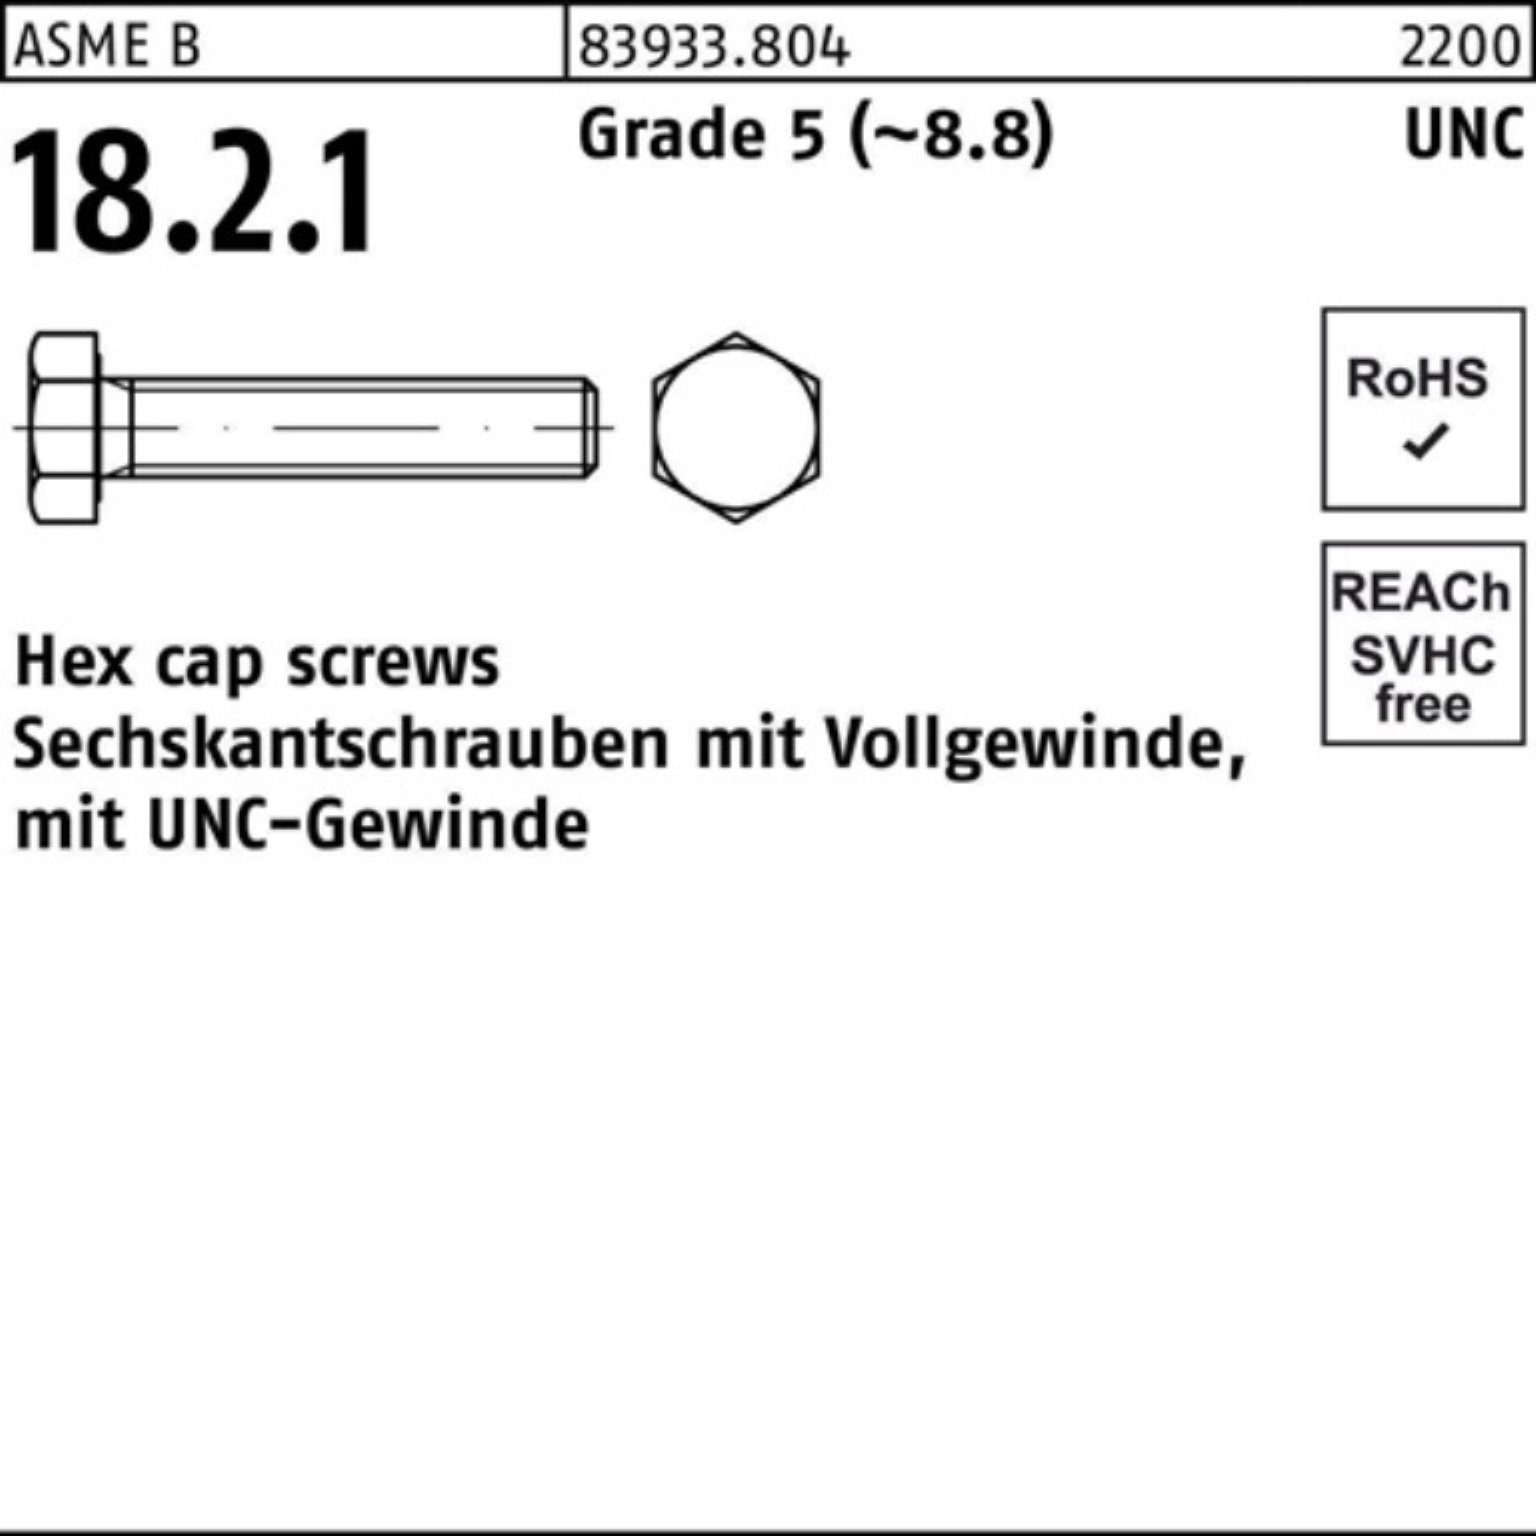 Reyher Sechskantschraube 100er Pack Sechskantschraube R 83933 UNC-Gewinde VG 3/8x 5/8 Grade 5